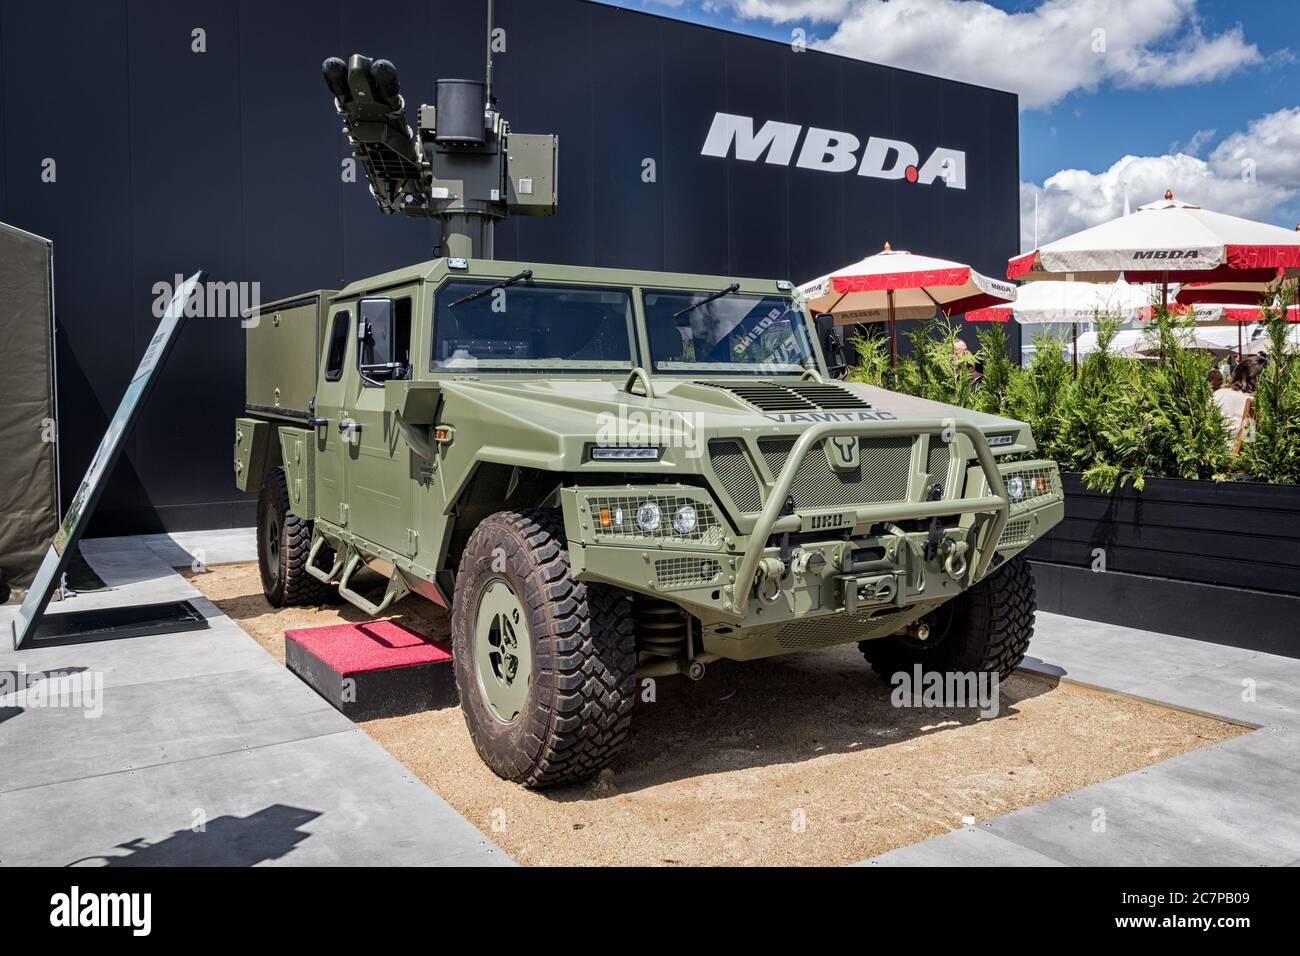 LE BOURGET PARIS - 21 JUIN 2019 : véhicule militaire URU Vamtac avec système de missiles MBDA exposé au salon de l'Air de Paris. Banque D'Images